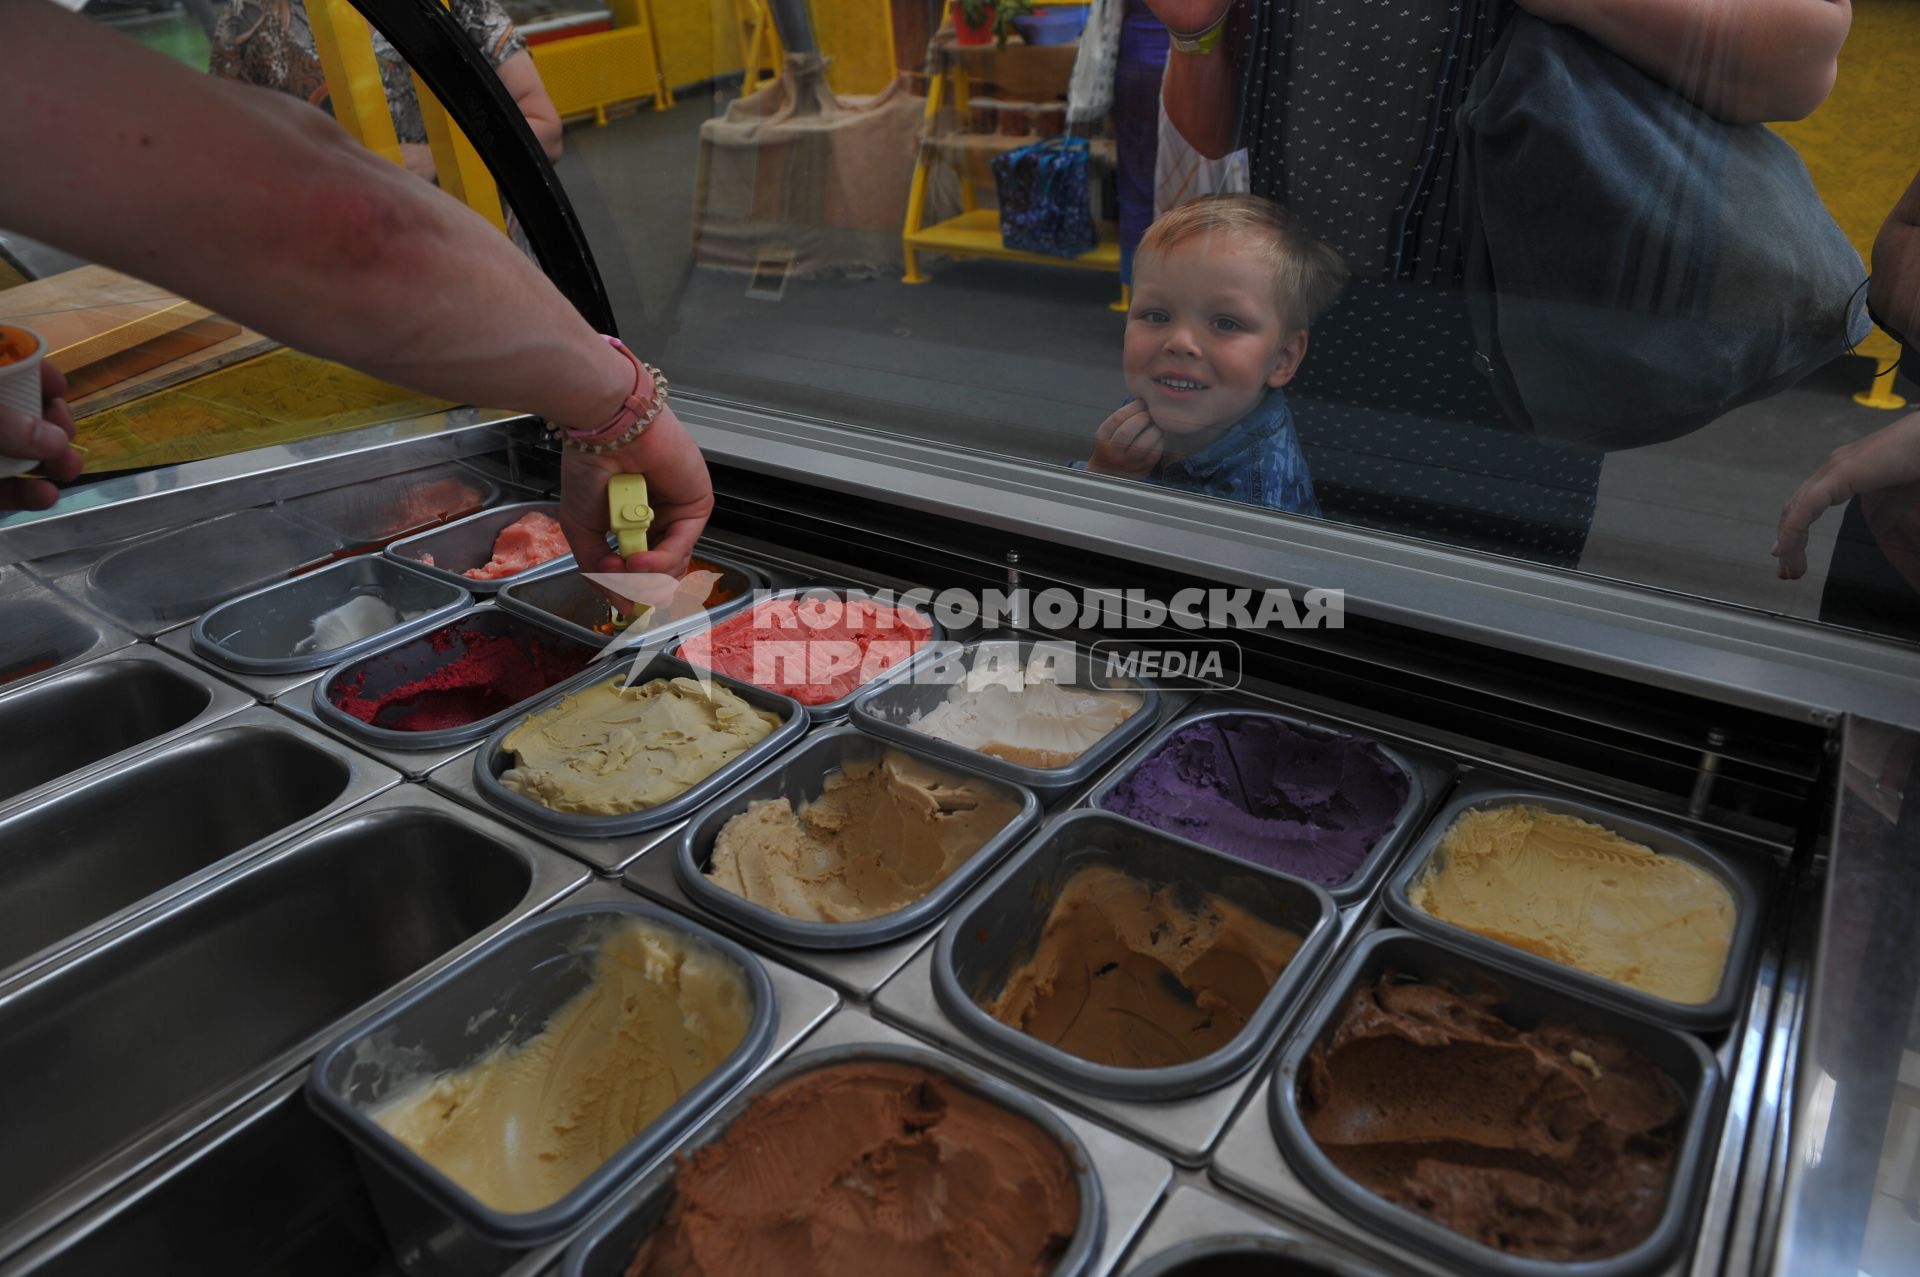 Москва.   Продажа мороженого на ярмарке выходного дня на ВДНХ.